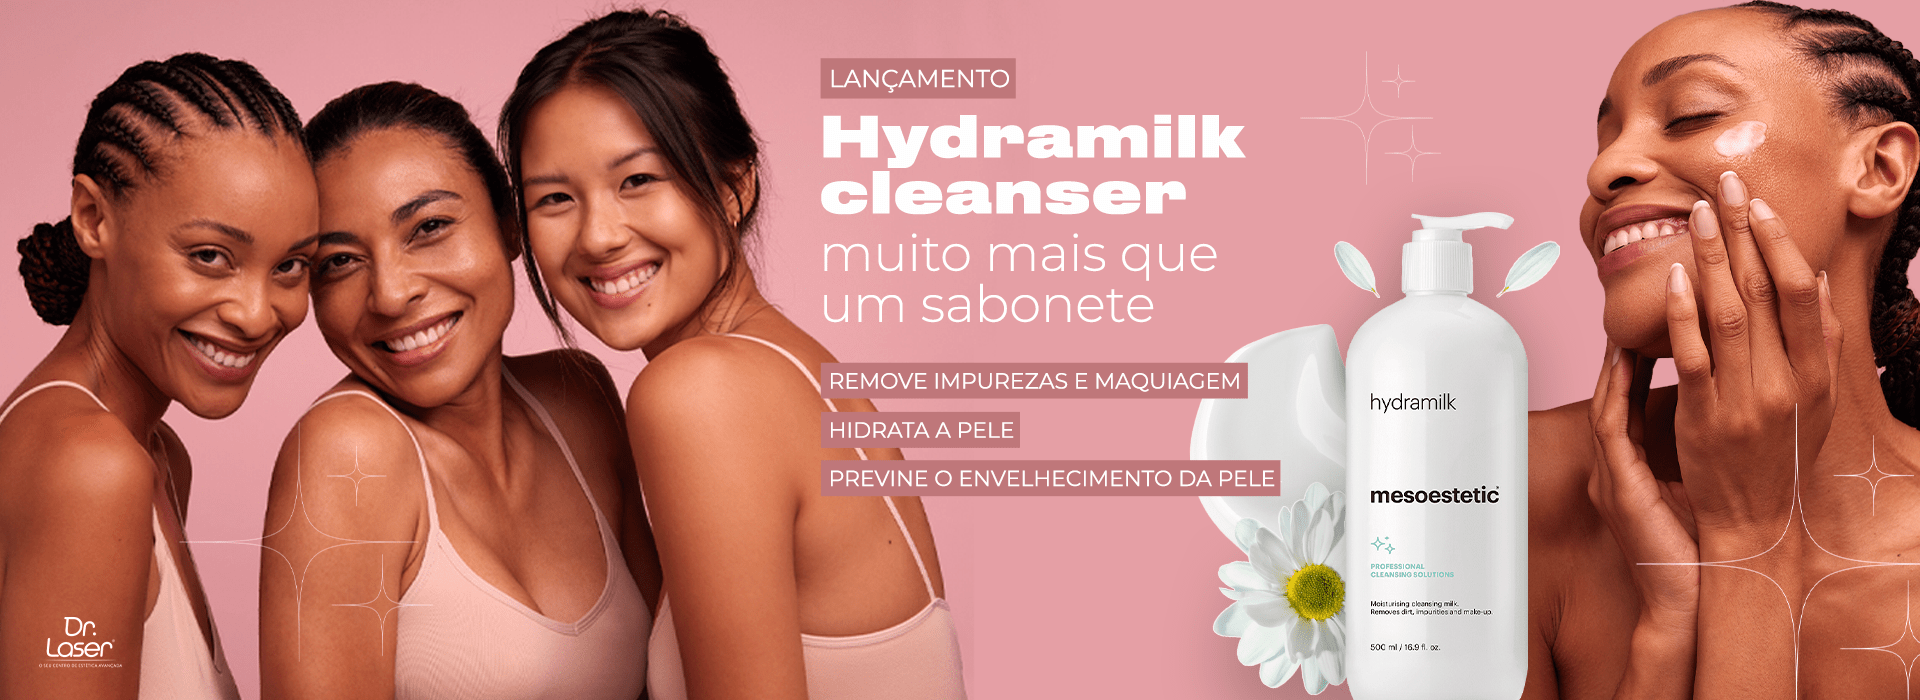 Hydramilk cleanser muito mais que um sabonete - Remove impurezas e maquiagem, Hidrata a pele, previne o envelhecimento da pele.